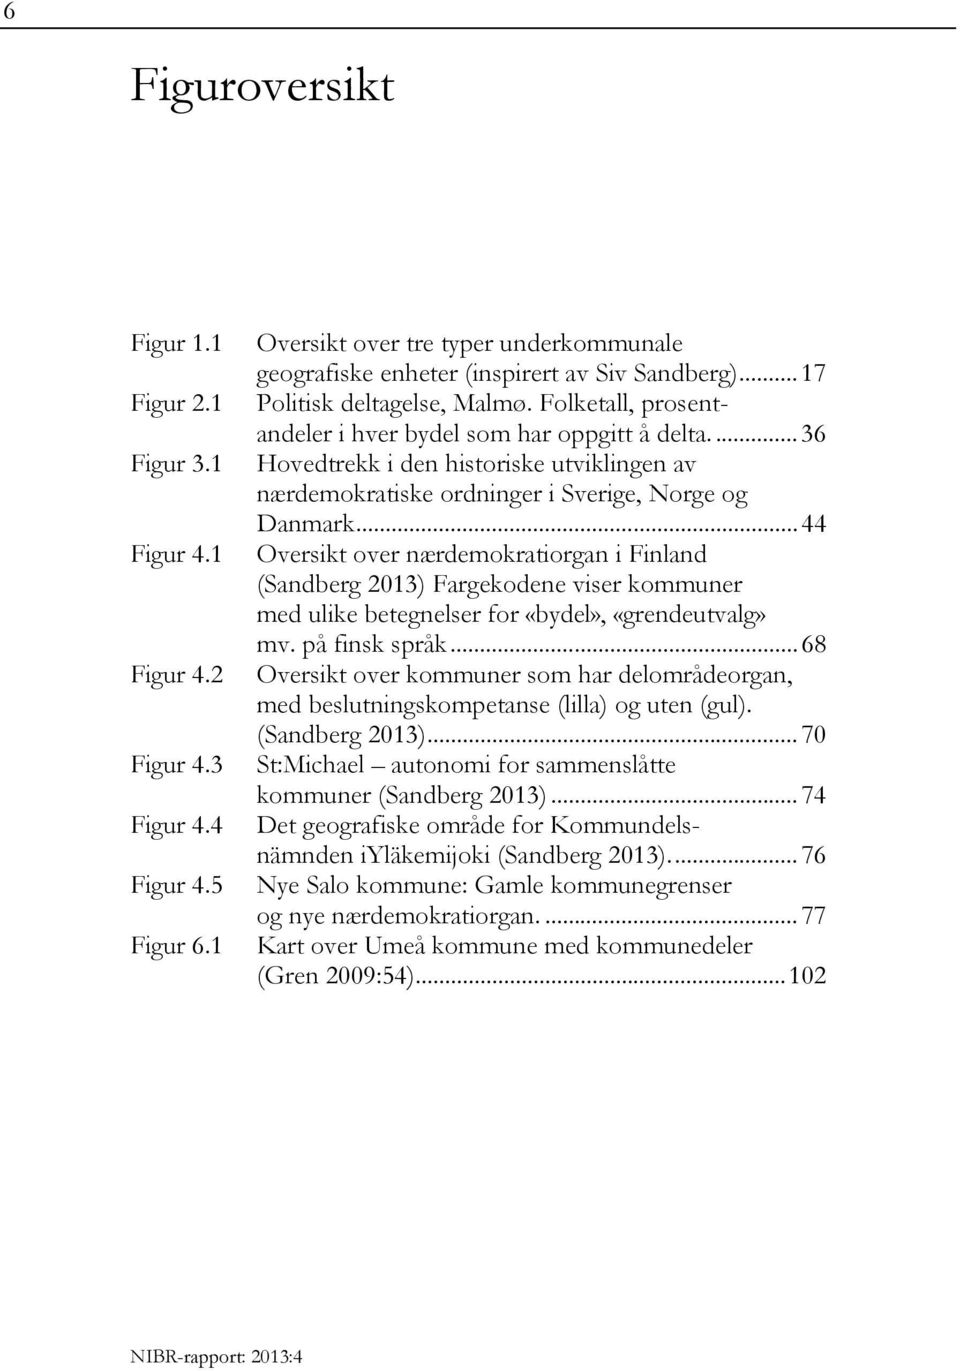 .. 44 Oversikt over nærdemokratiorgan i Finland (Sandberg 2013) Fargekodene viser kommuner med ulike betegnelser for «bydel», «grendeutvalg» mv. på finsk språk.